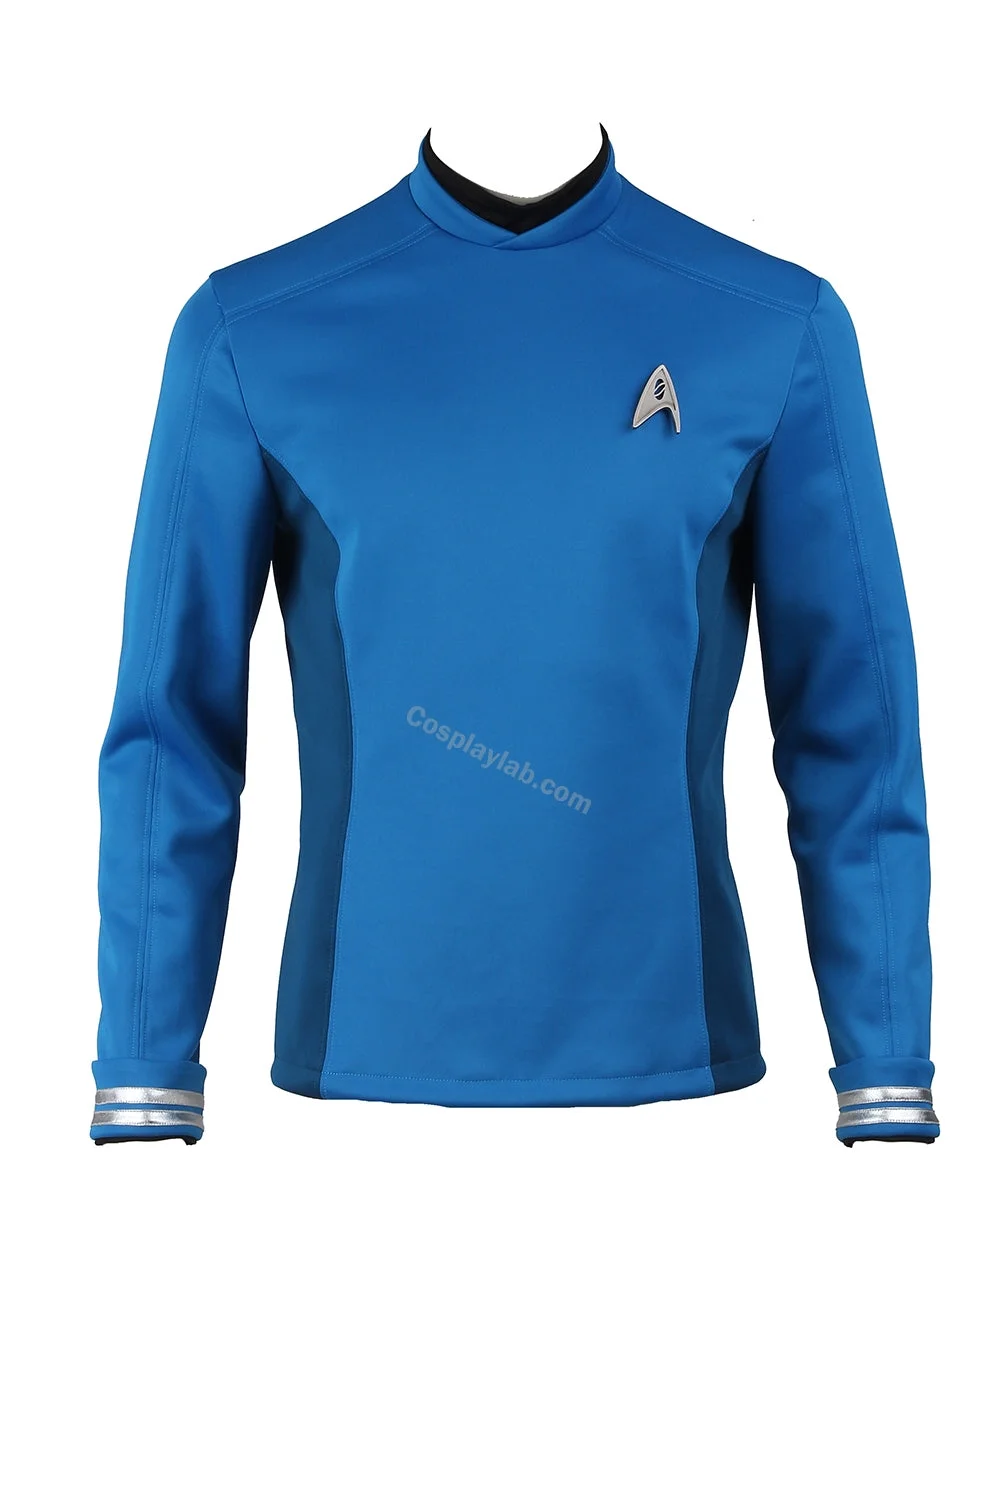 Leonard McCoy Bones Cosplay blue man Jacket Star Trek Beyond Costumes Hoodie Sweat Shirts